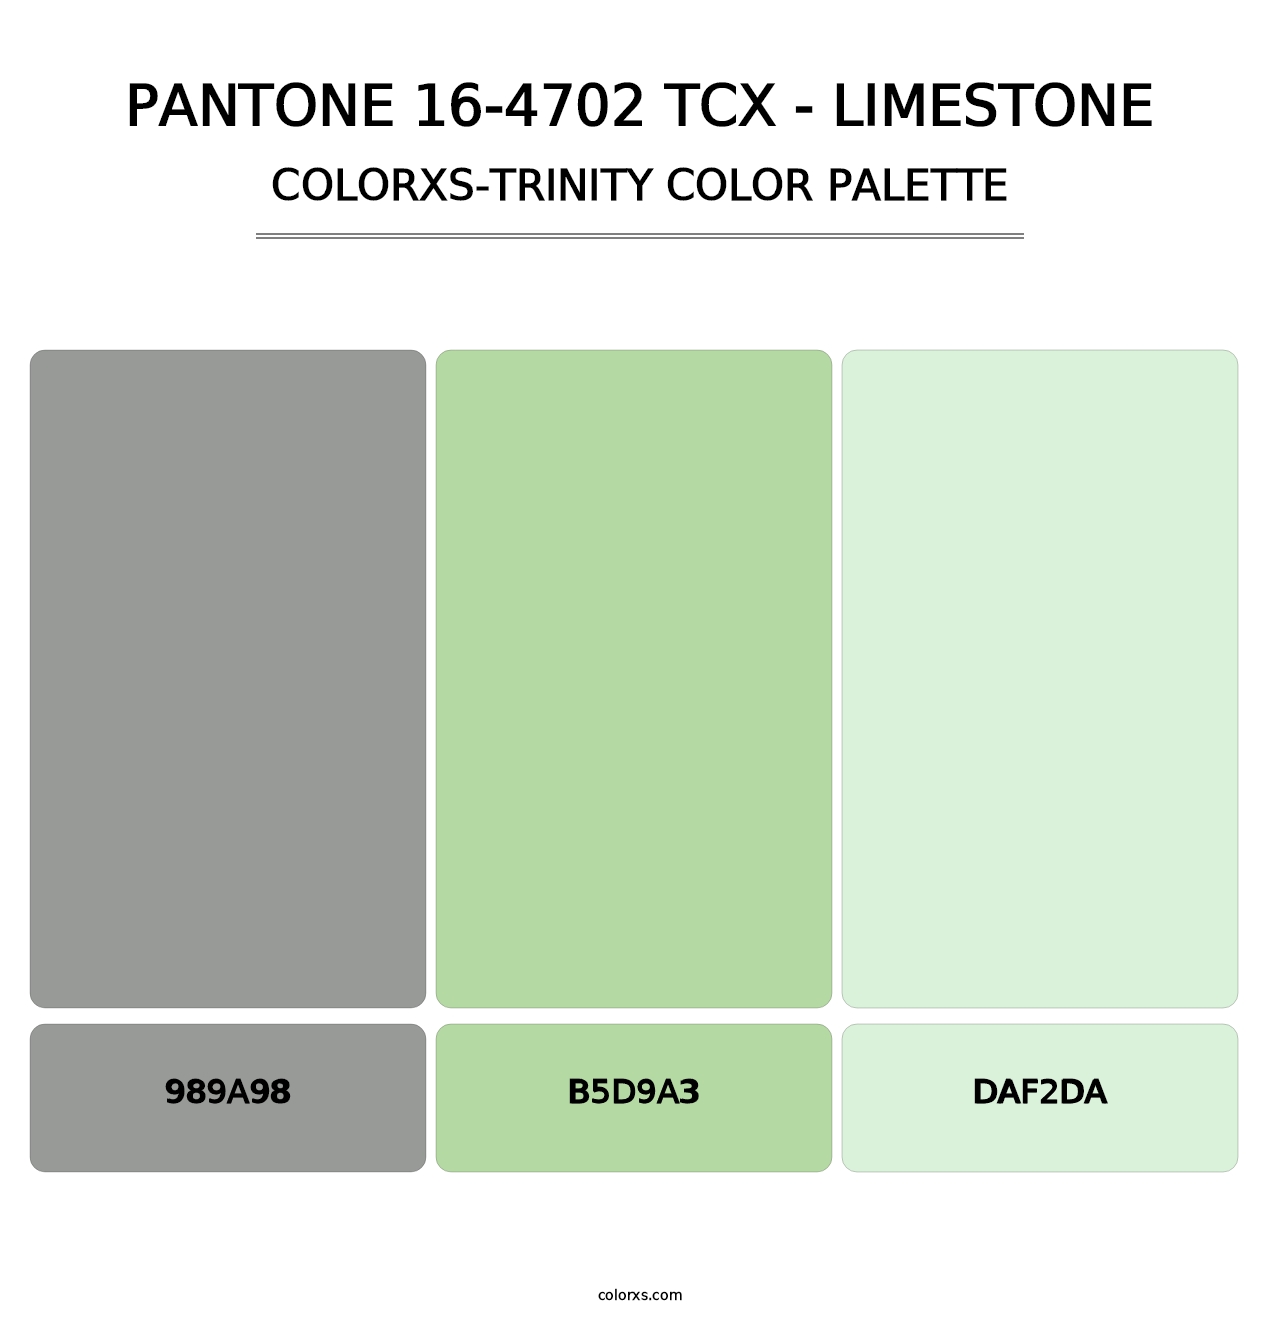 PANTONE 16-4702 TCX - Limestone - Colorxs Trinity Palette